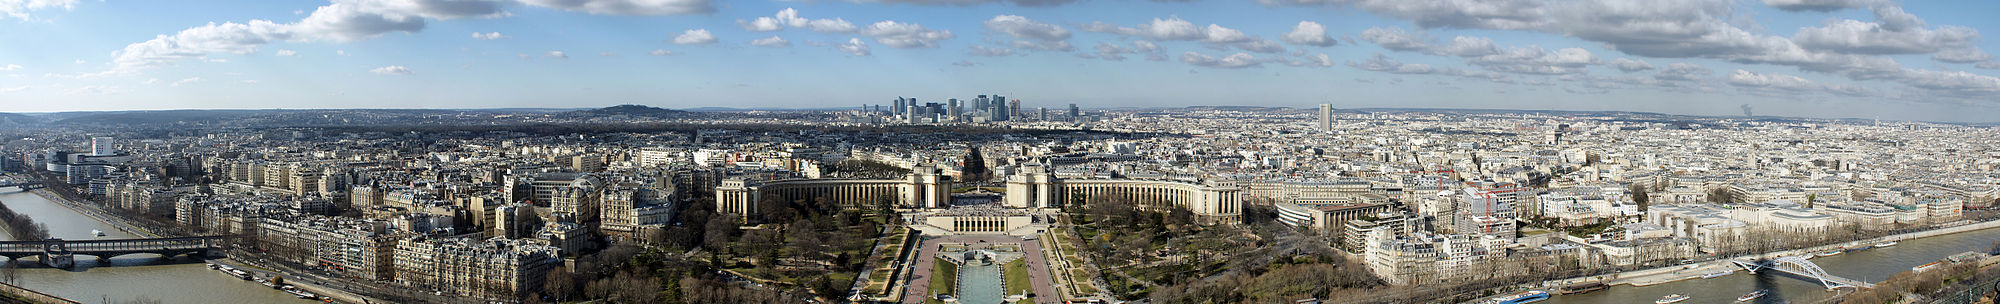 Panoramatický pohľad z Eiffelovej veže na mesto